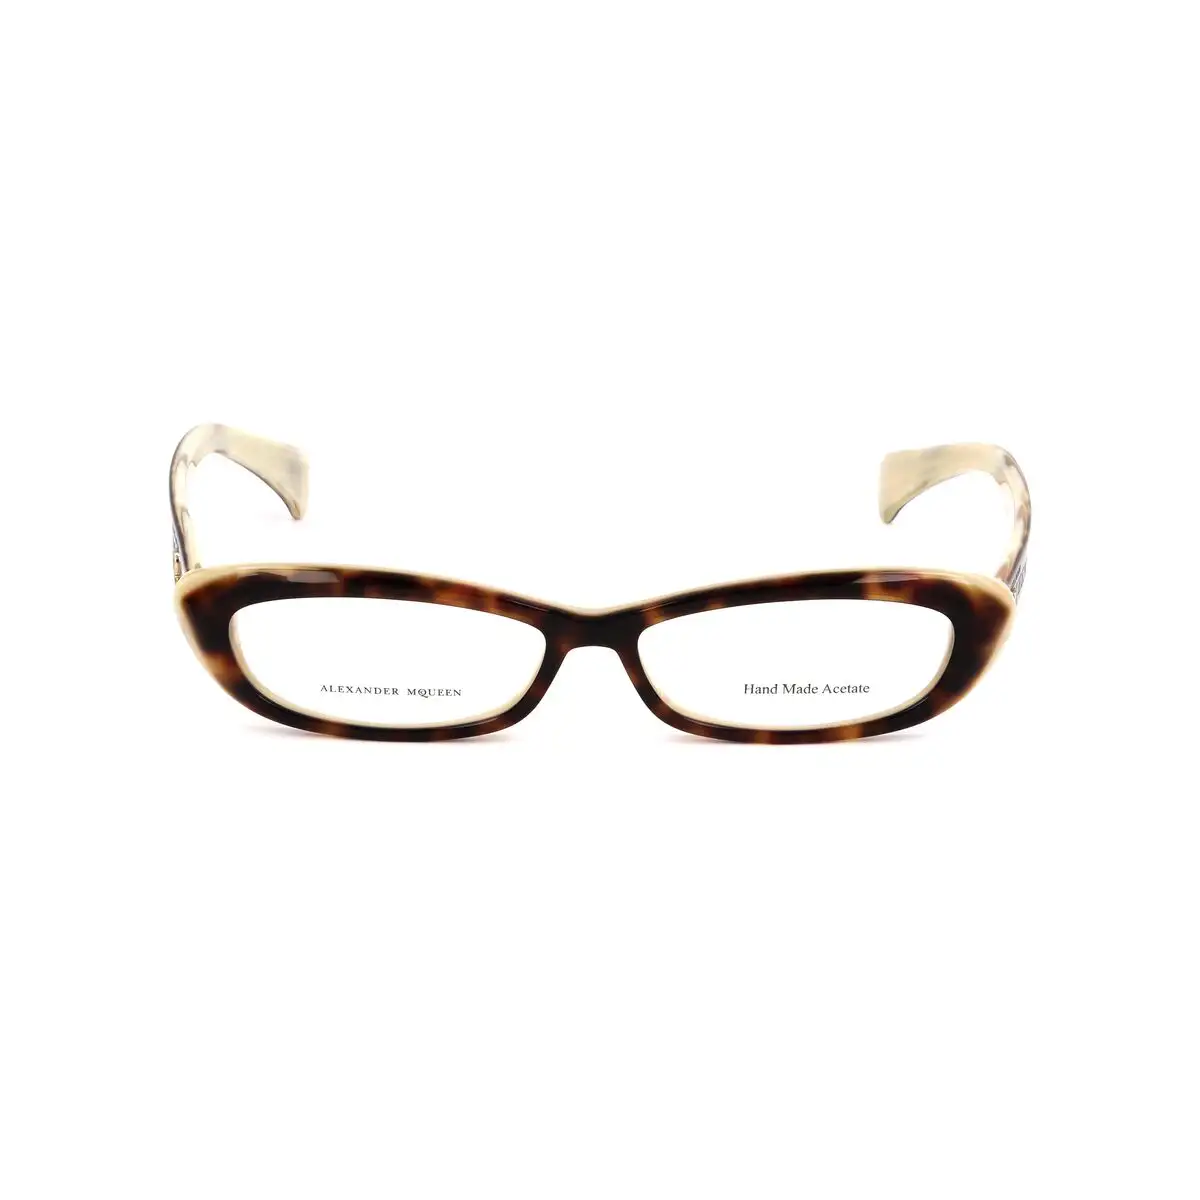 Monture de lunettes femme alexander mcqueen amq 4181 twx beige havana_3623. DIAYTAR SENEGAL - L'Art du Shopping Éclairé. Parcourez notre catalogue et choisissez parmi des produits de qualité qui satisferont vos besoins et votre style.